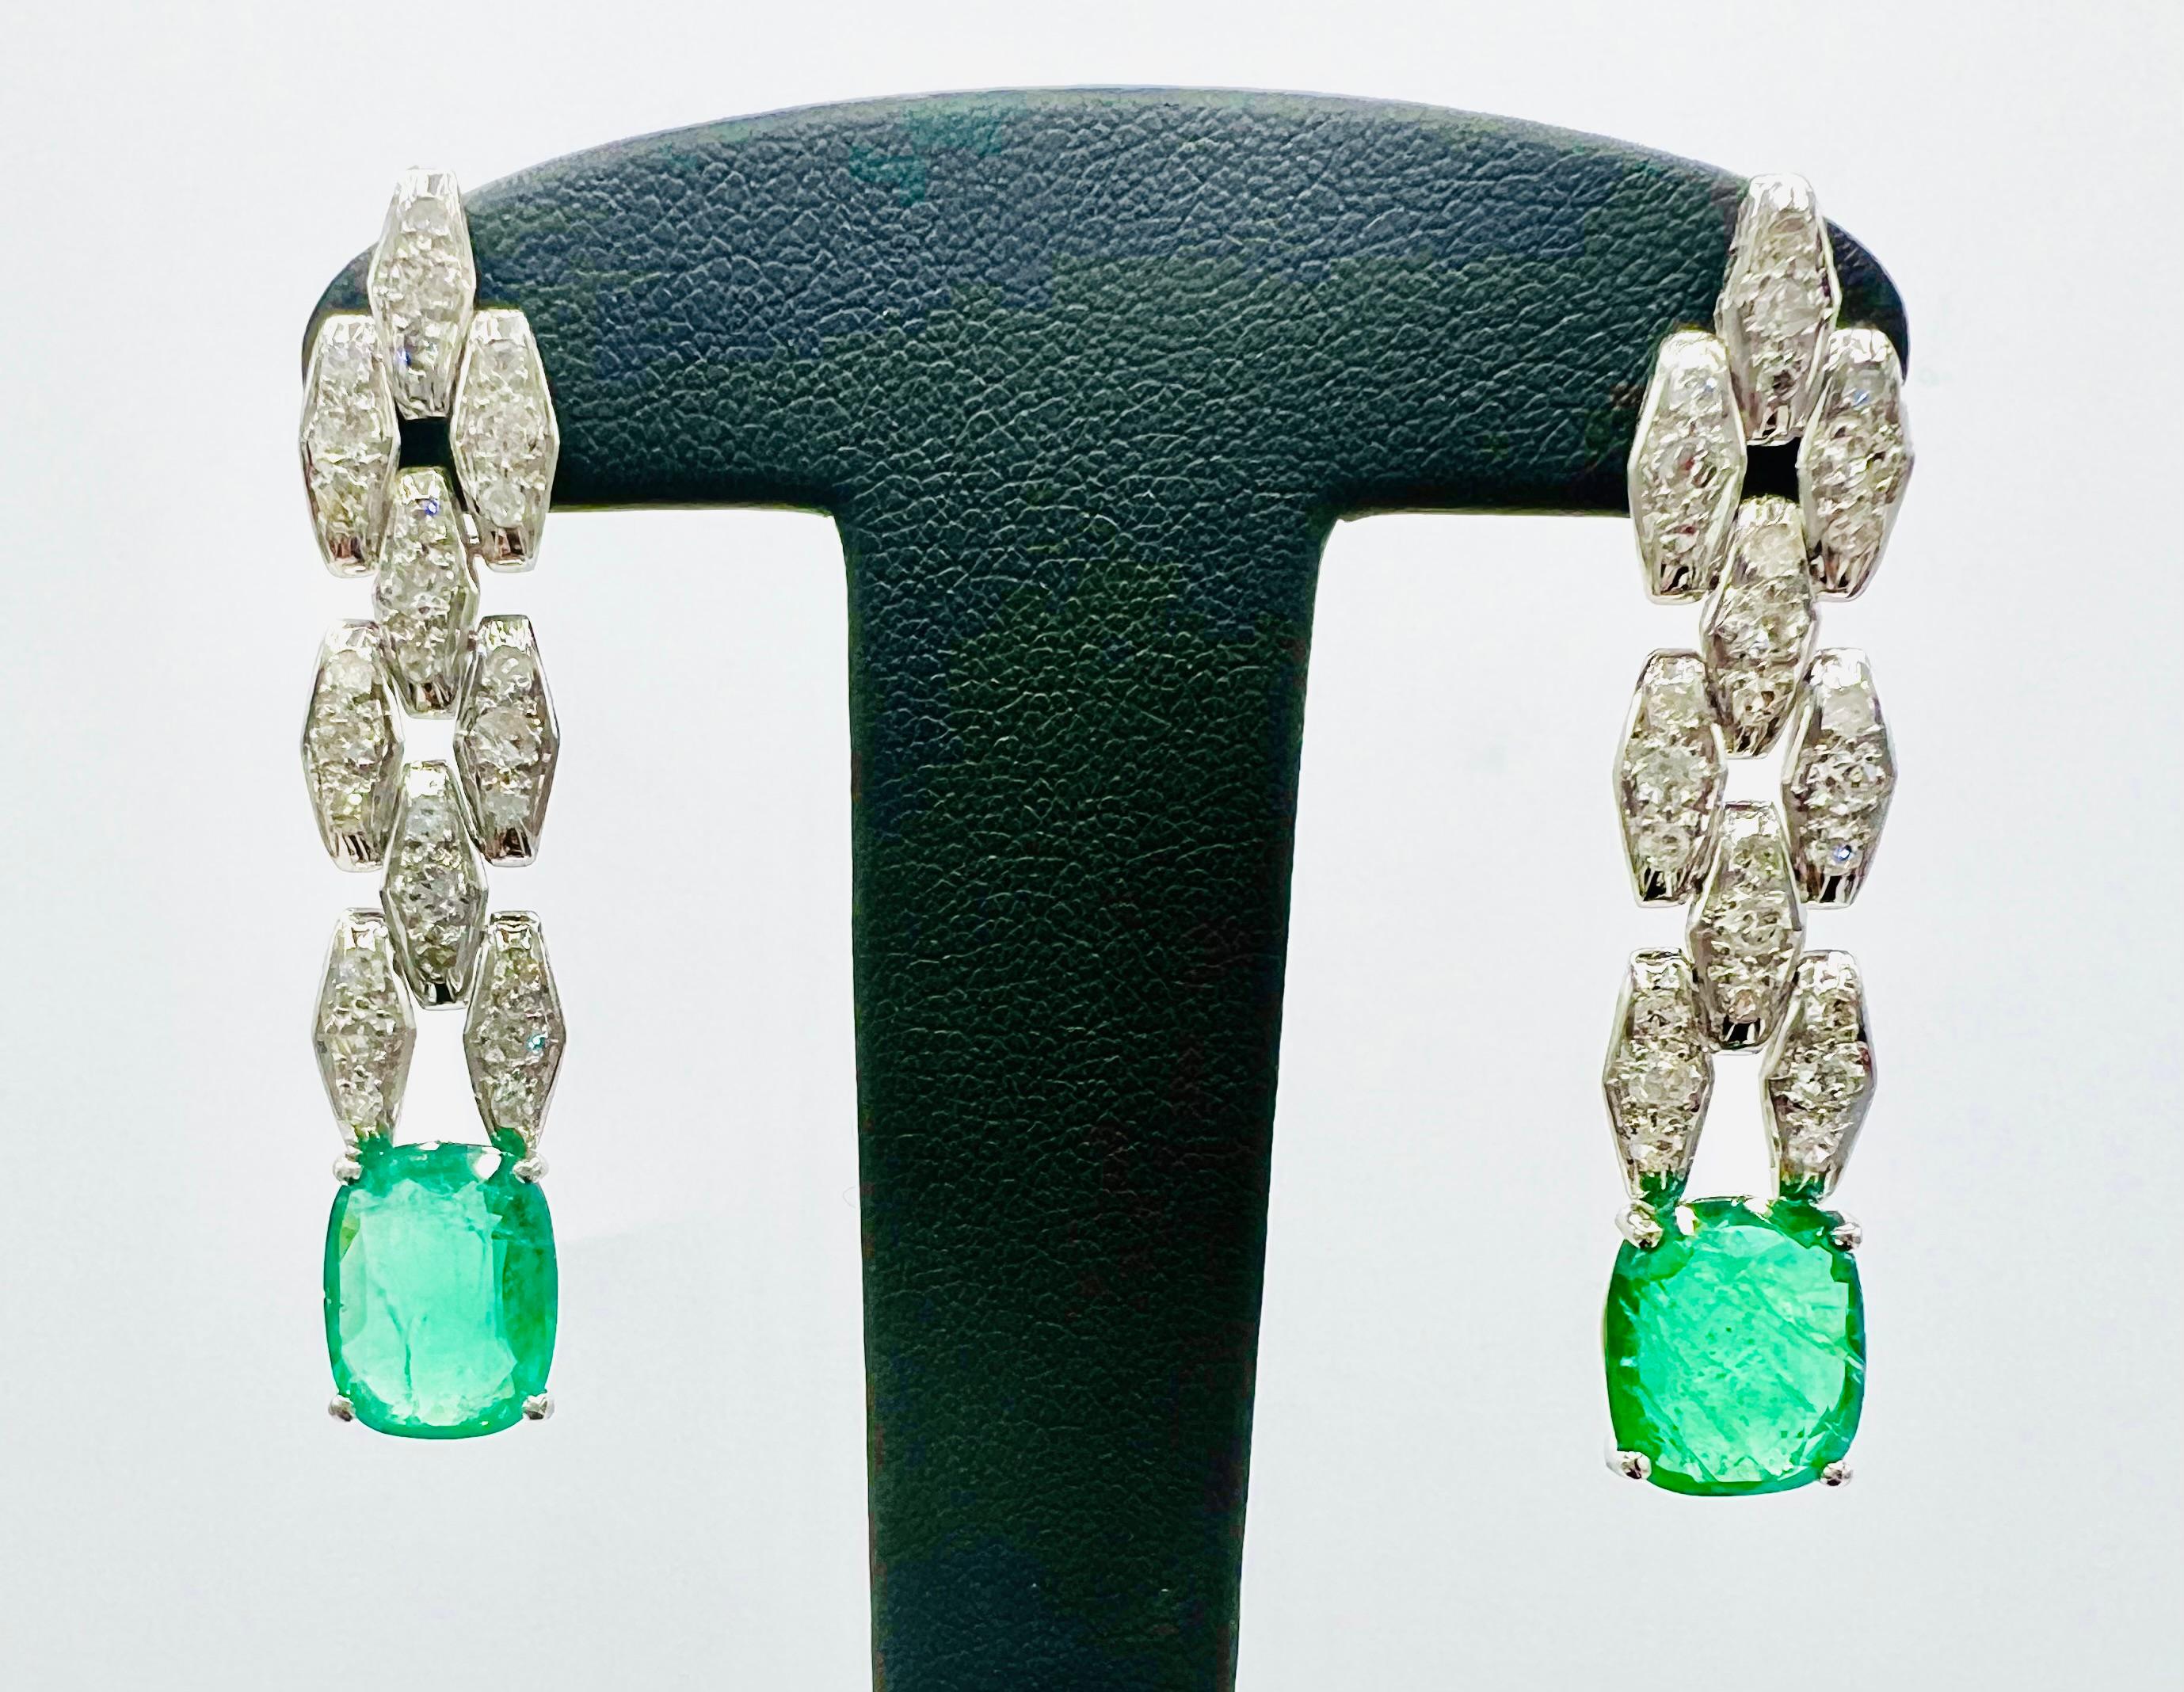 Paar Ohrringe aus Platin, besetzt mit 2 Smaragden und Pavé-Diamanten
Die Smaragde sind von hervorragender Qualität und wiegen insgesamt 5,50 Karat, umgeben von einem Brillantbesatz von insgesamt ca. 1 Karat.
das Gesamtgewicht beträgt 10,70 g
sie